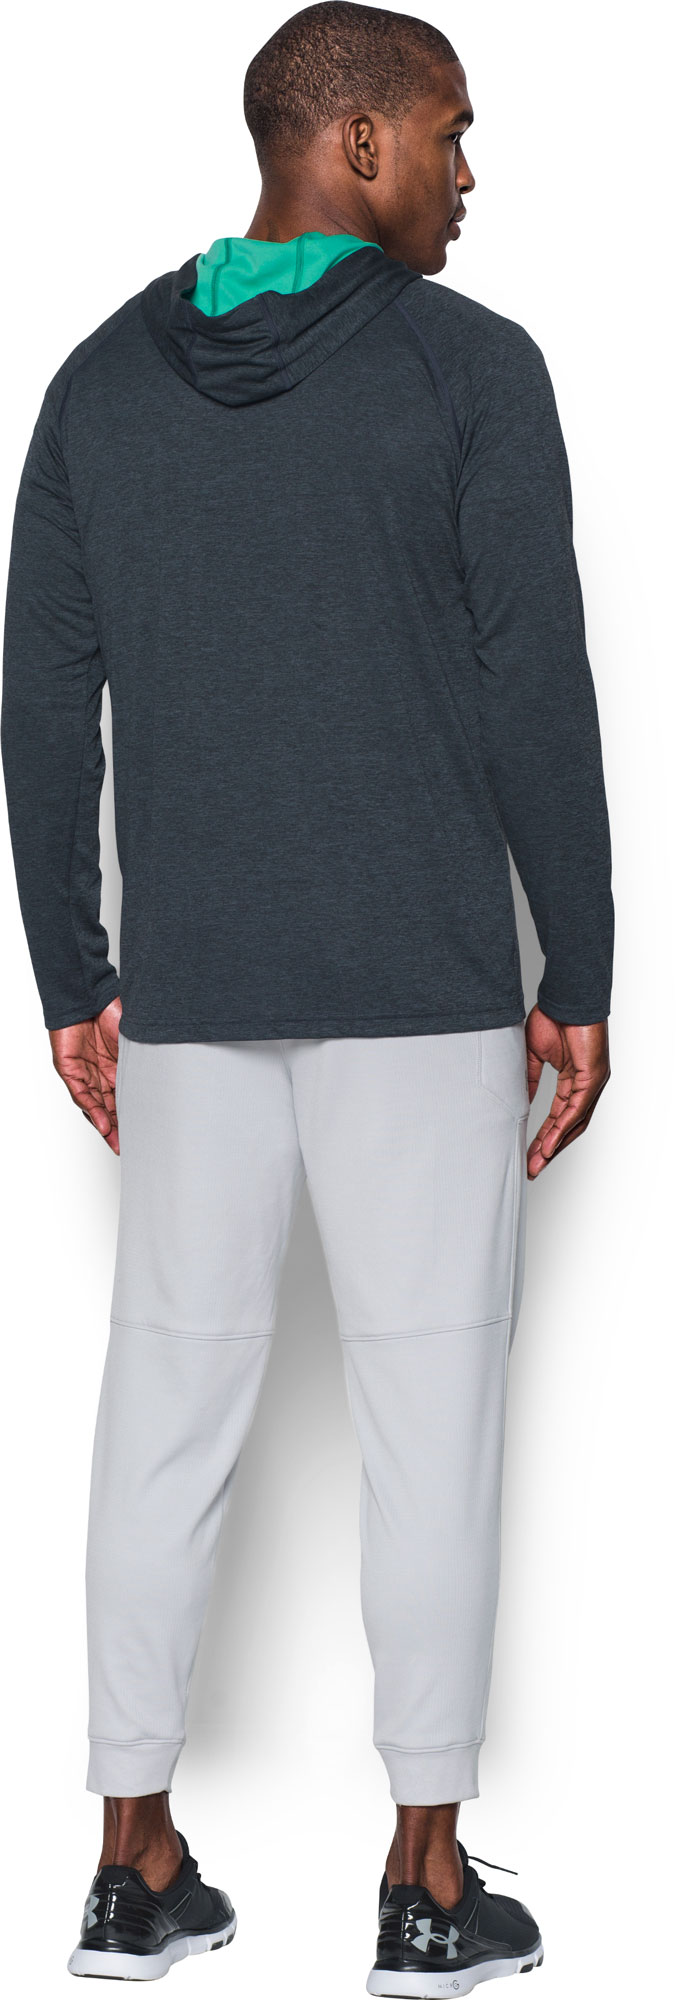 Men's functional sweatshirt